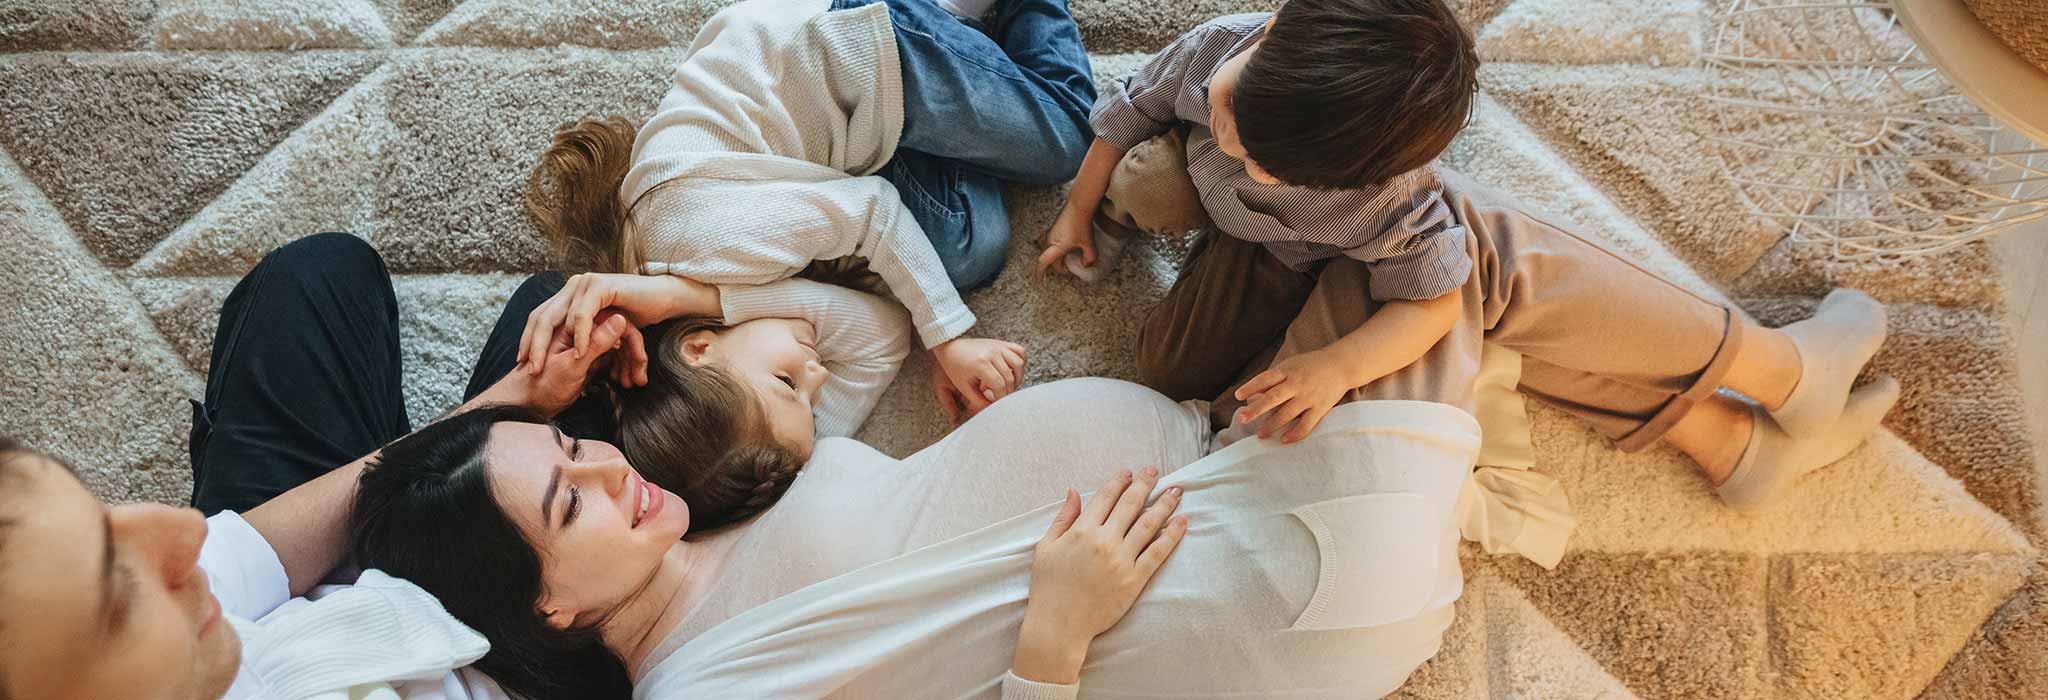 Família junta al sofà amb dos fills i dona embarassada